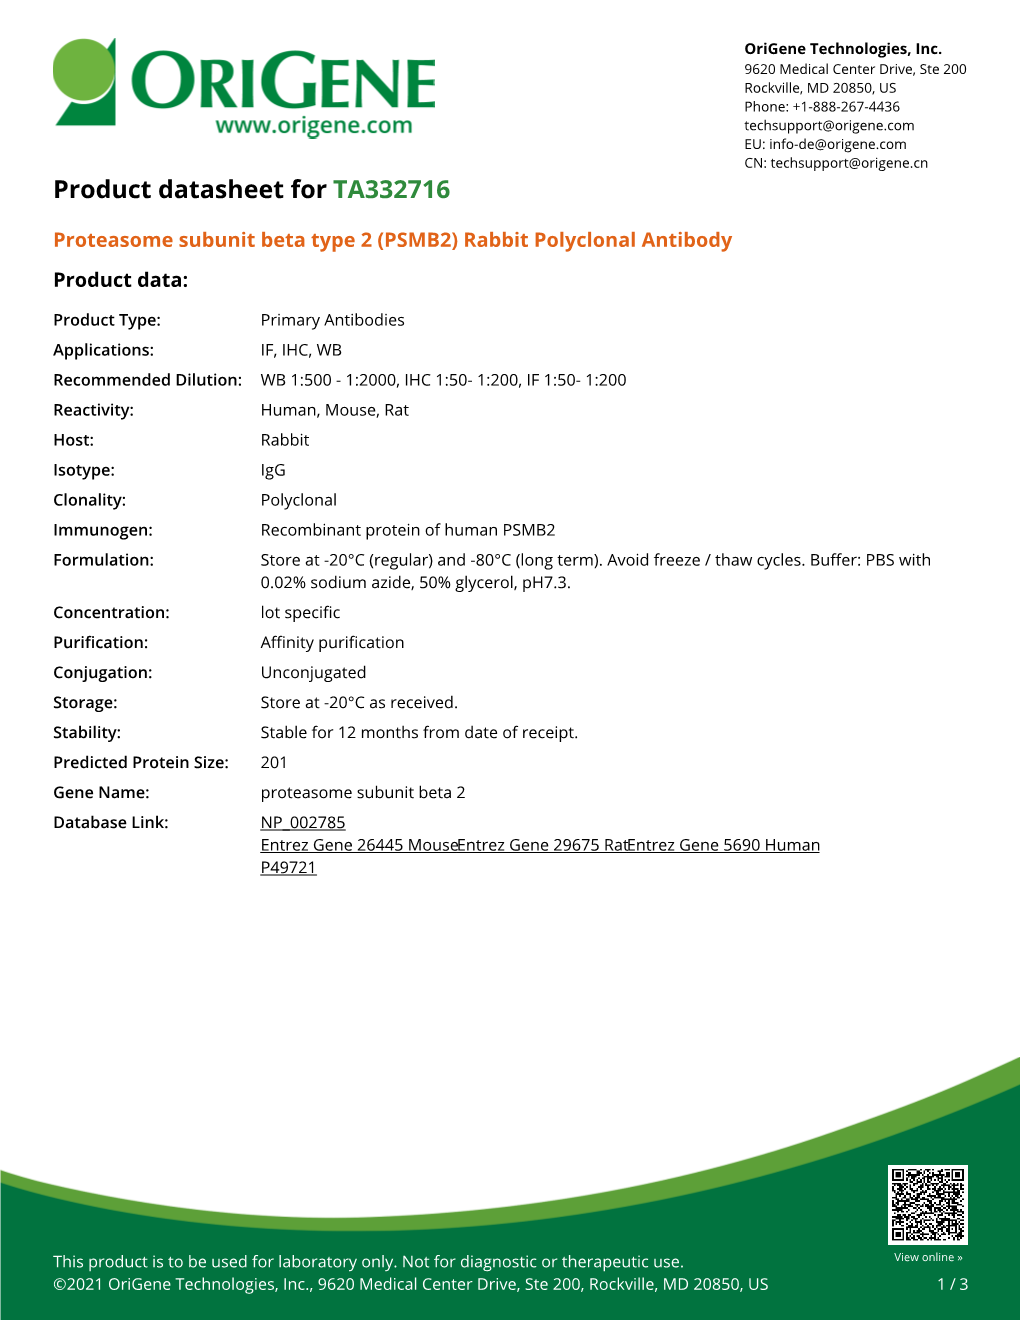 Proteasome Subunit Beta Type 2 (PSMB2) Rabbit Polyclonal Antibody Product Data